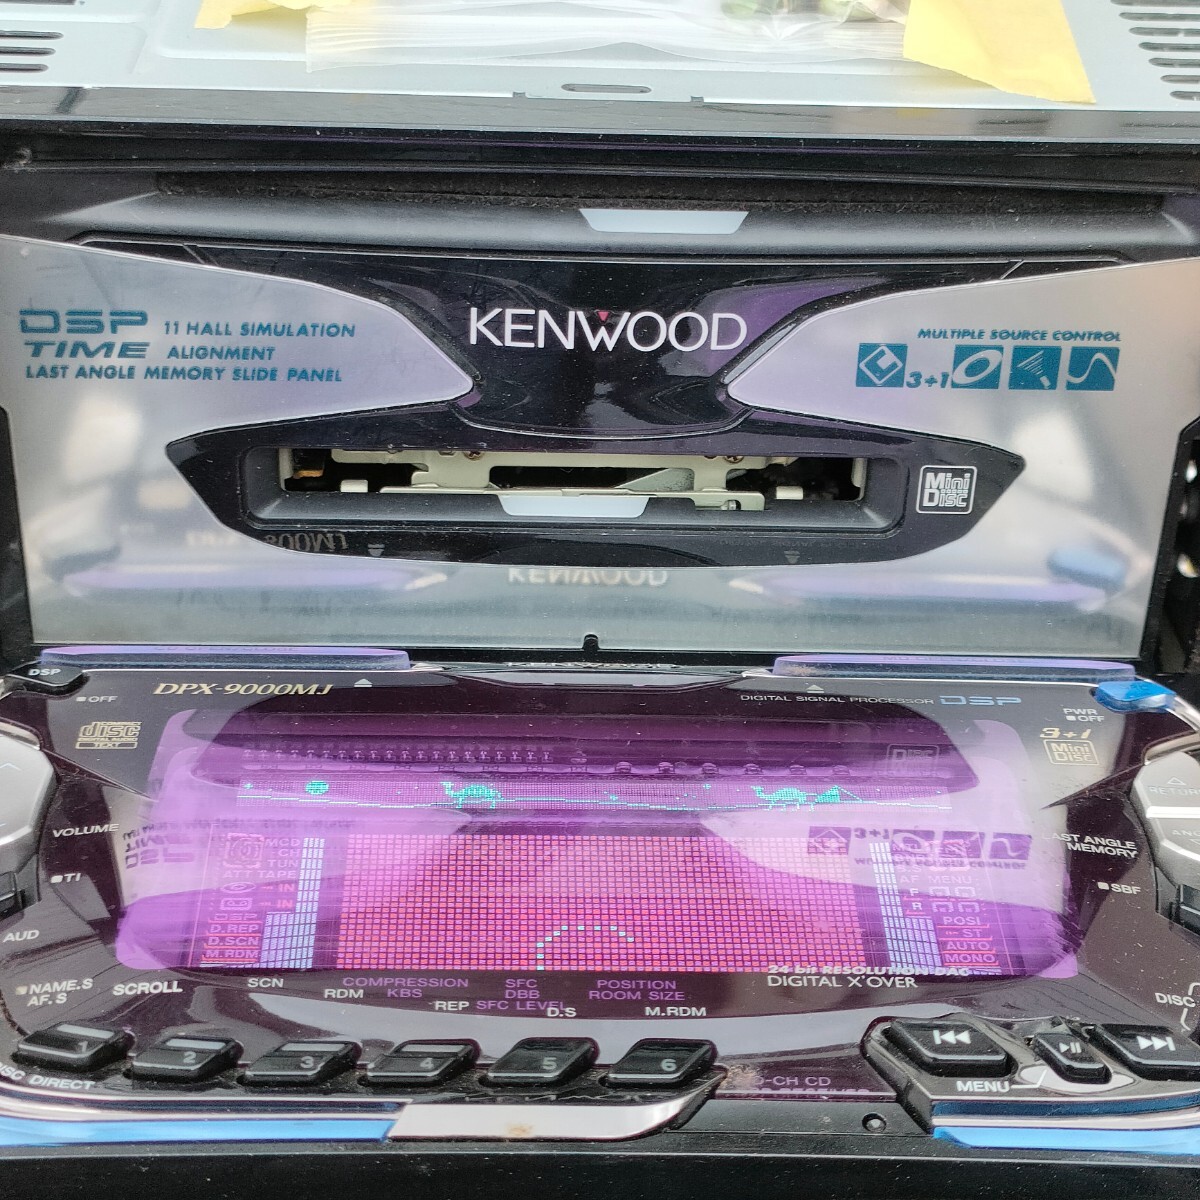 KENWOOD CD MD 2DIN DPX-9000MJ MD3+1 changer подлинная вещь высший класс модель Kenwood машина стерео AM FM плеер рабочее состояние подтверждено 